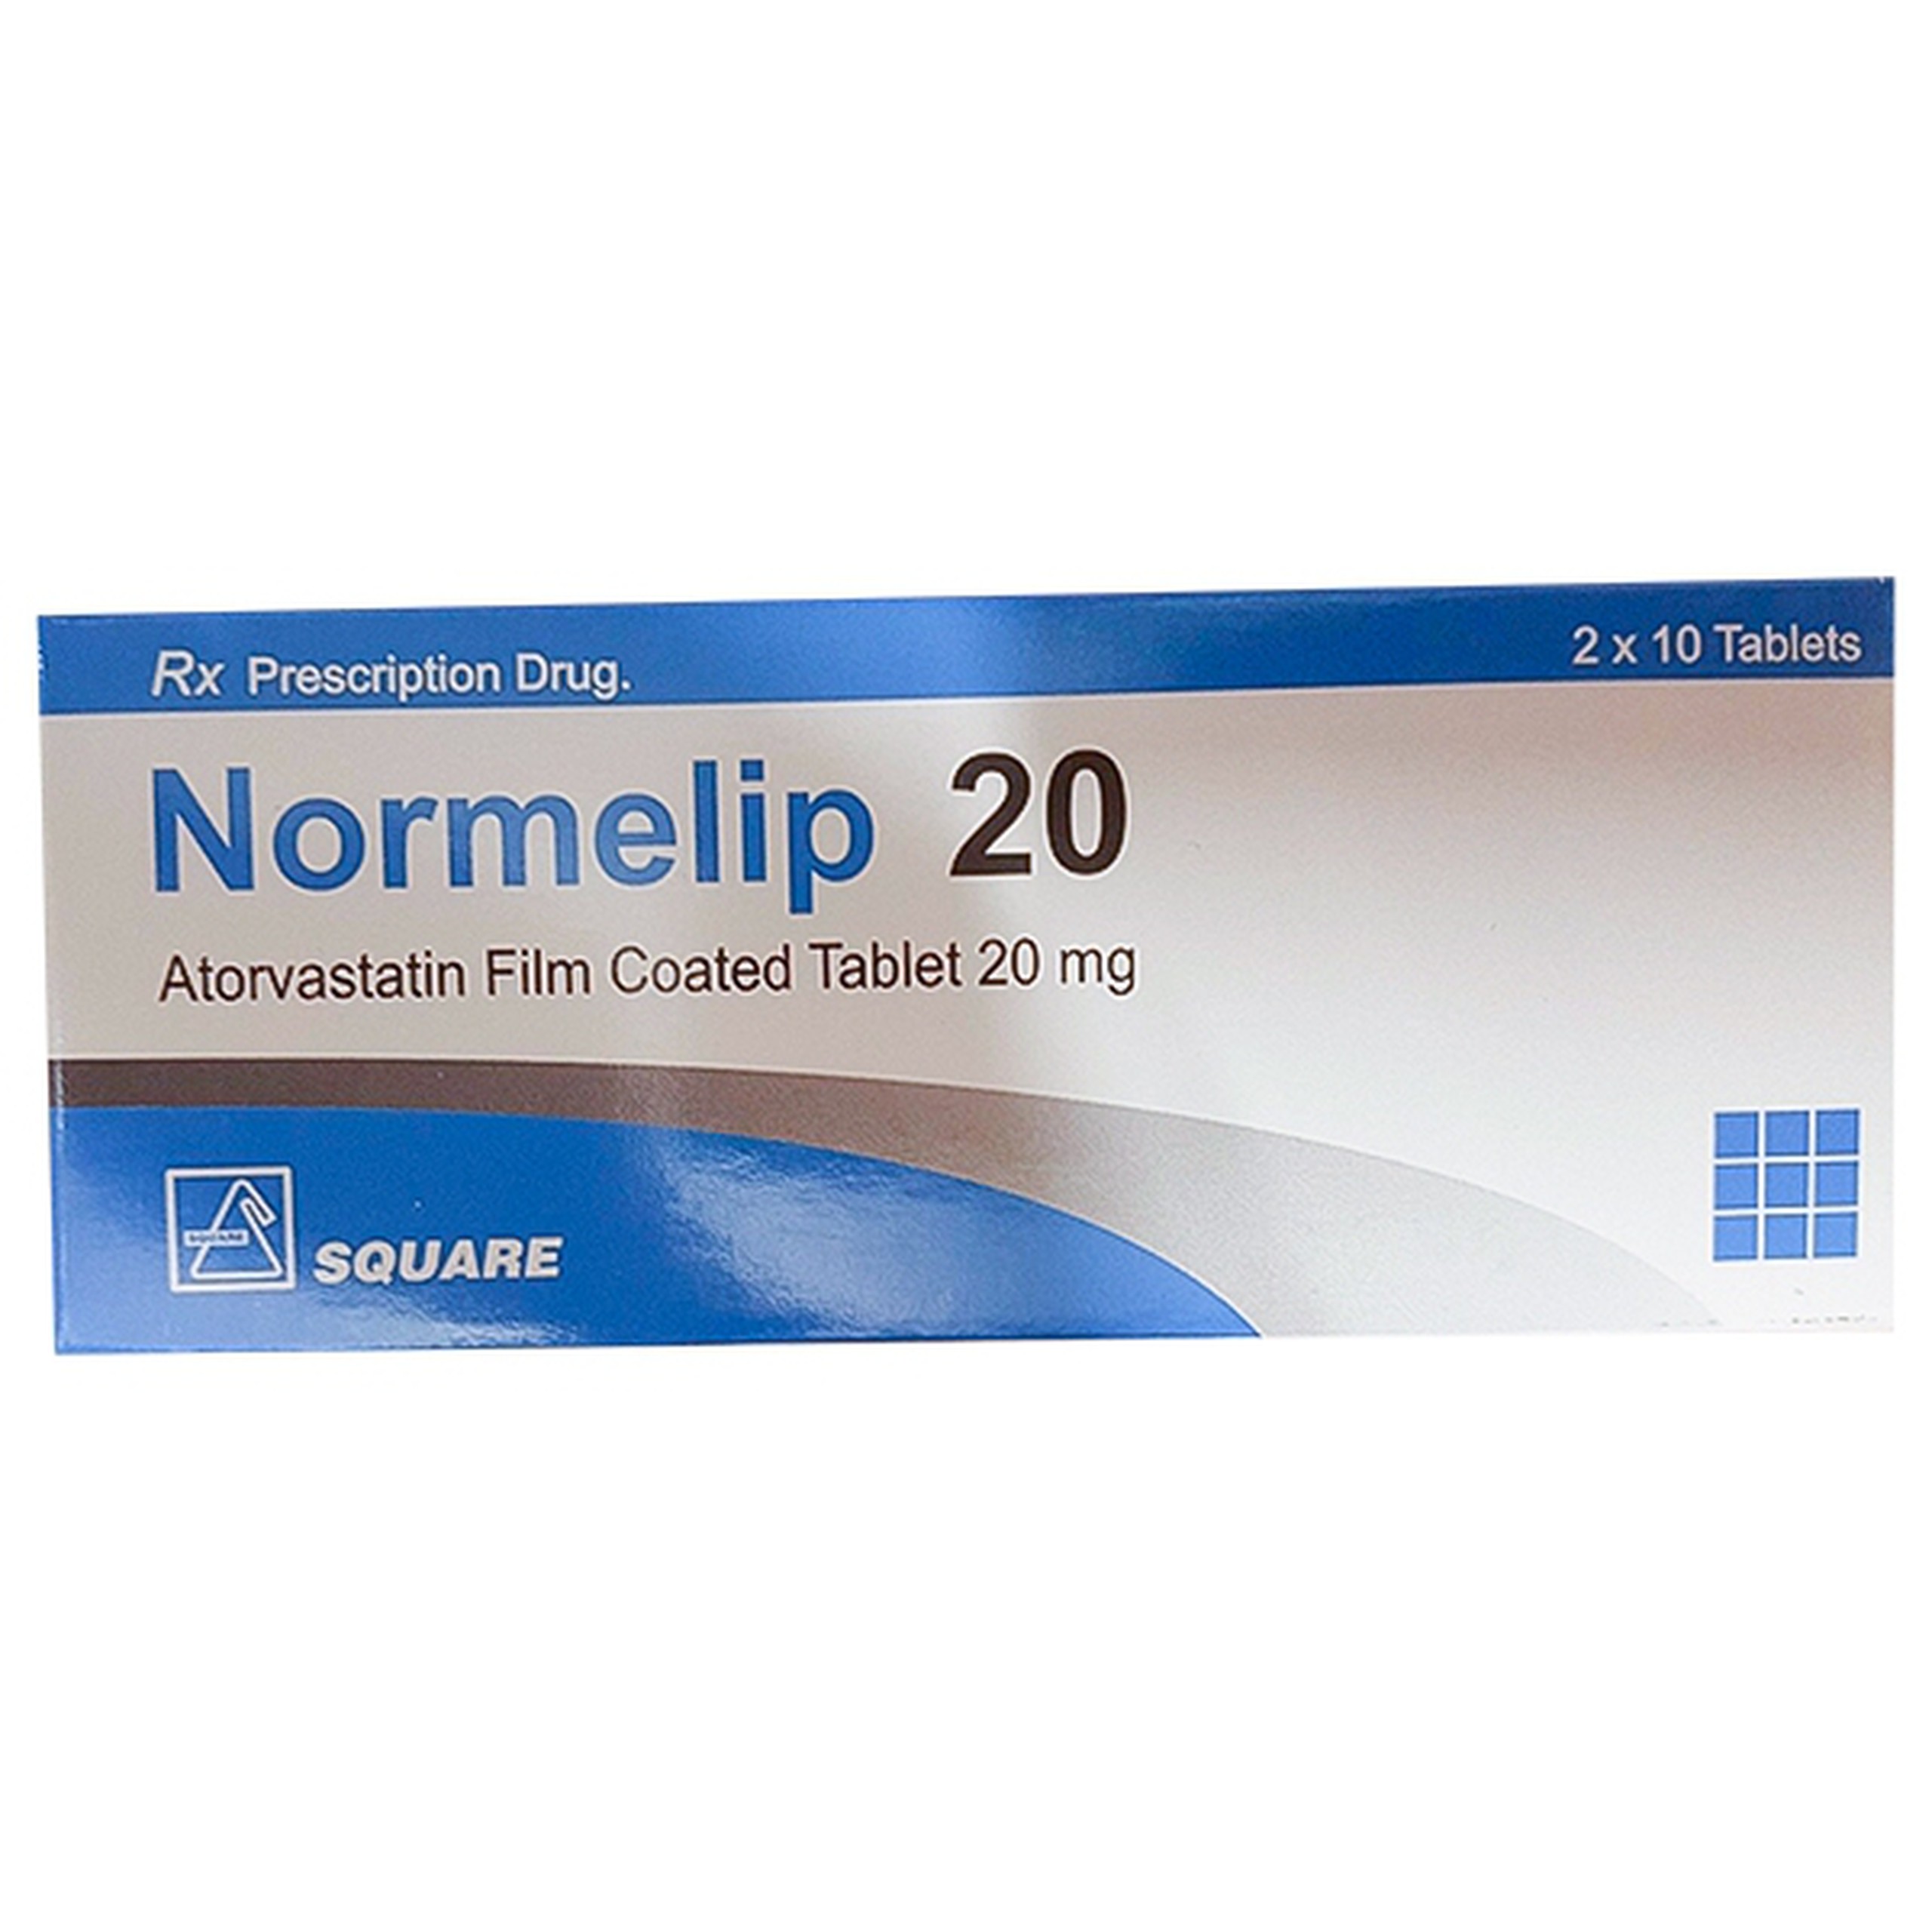 Thuốc Normelip 20 Square giảm cholesterol toàn phần (2 vỉ x 10 viên)